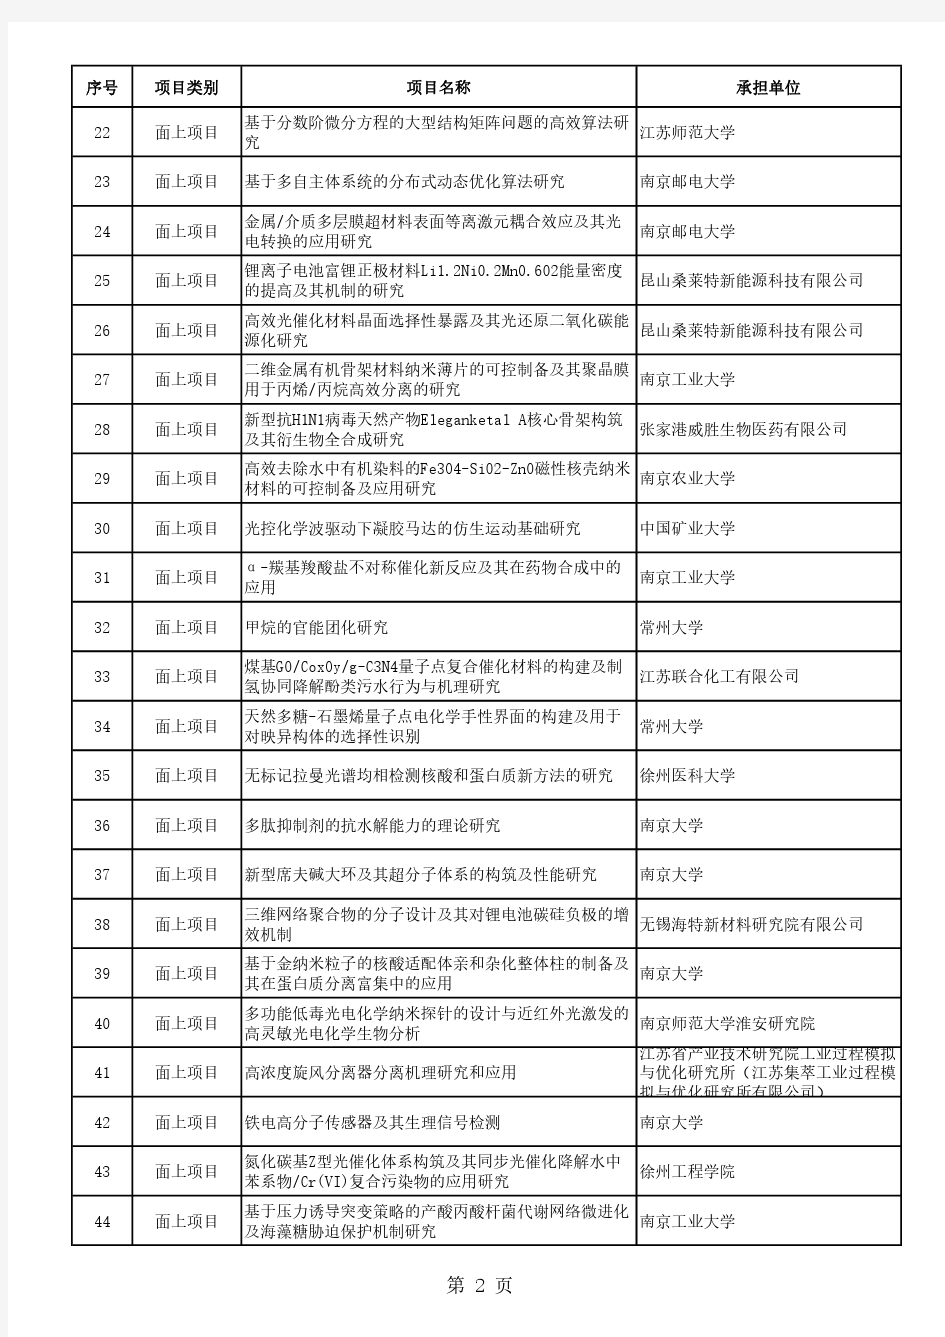 2017年江苏省自然科学基金面上项目公示清单